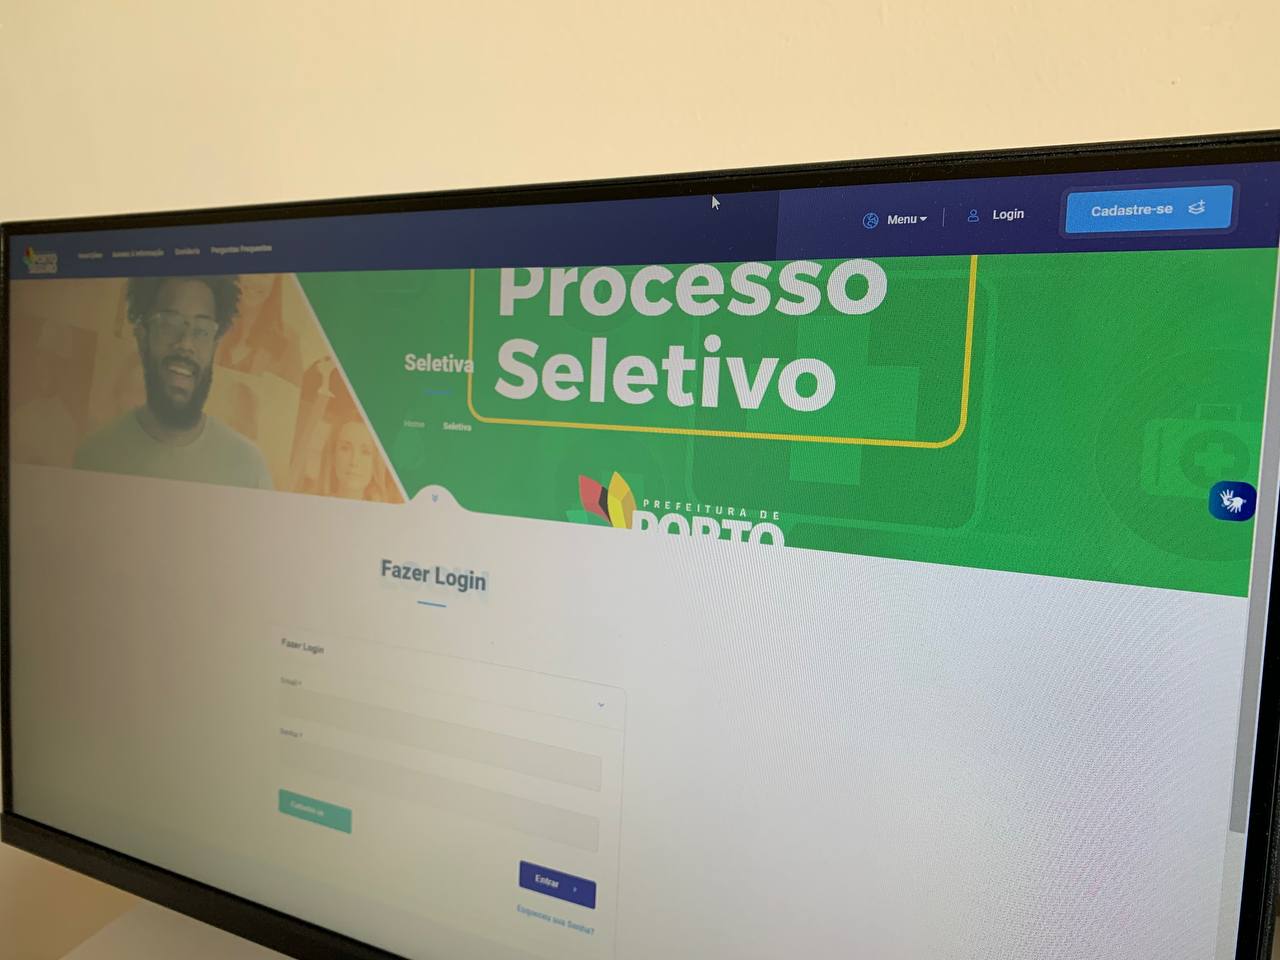 Processo Seletivo de Porto Seguro oferece 1.109 vagas com salários de até R$ 2,4 mil